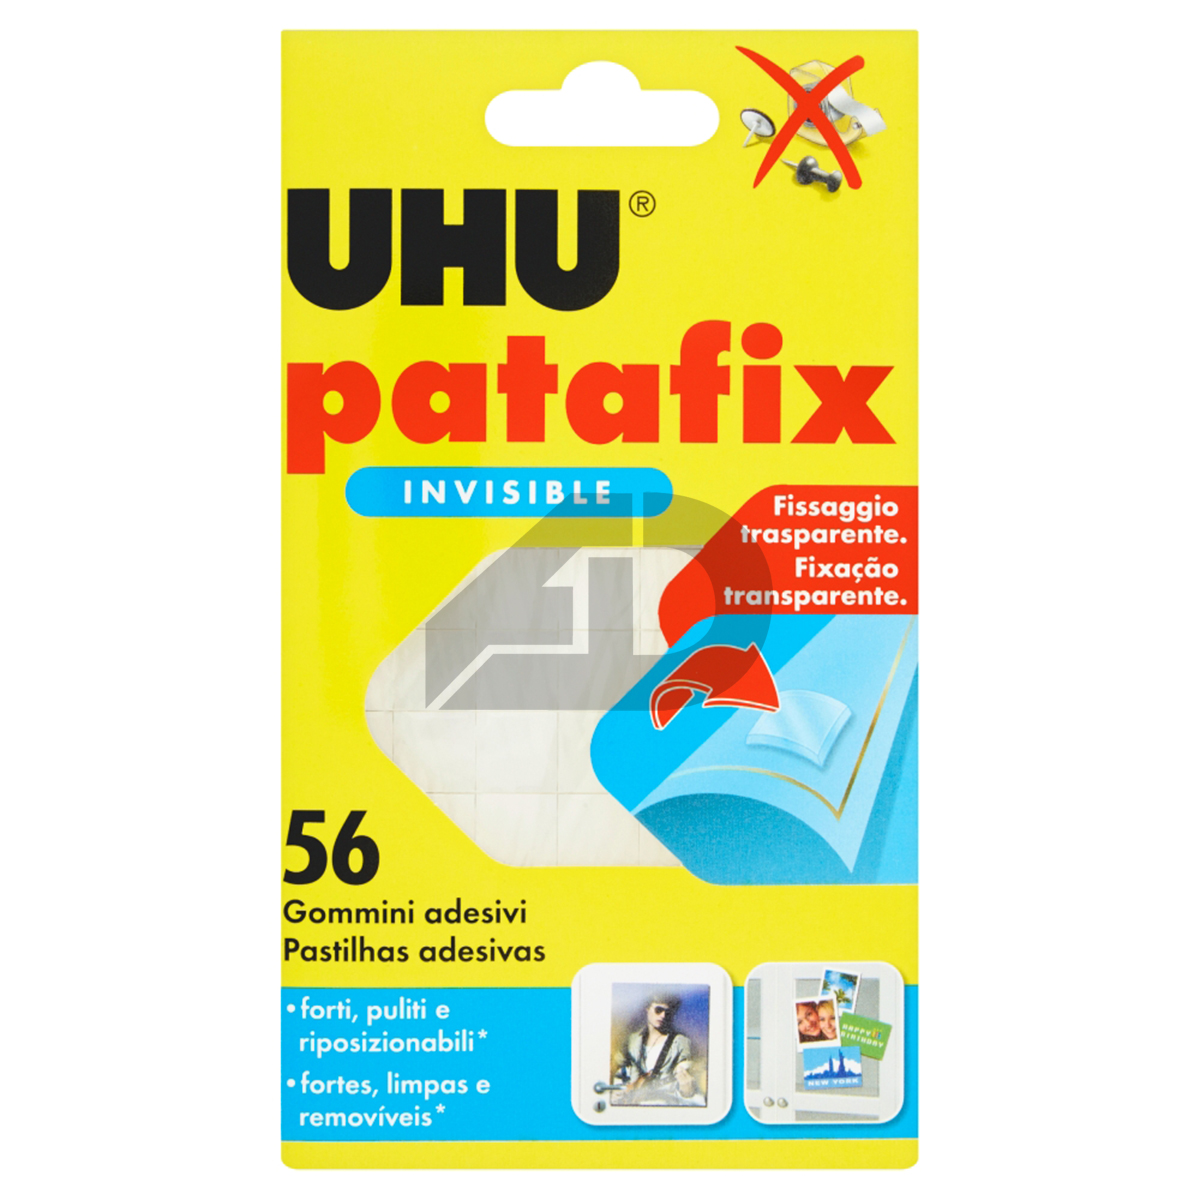 Gommini adesivi UHU Patafix 56 pezzi trasparente